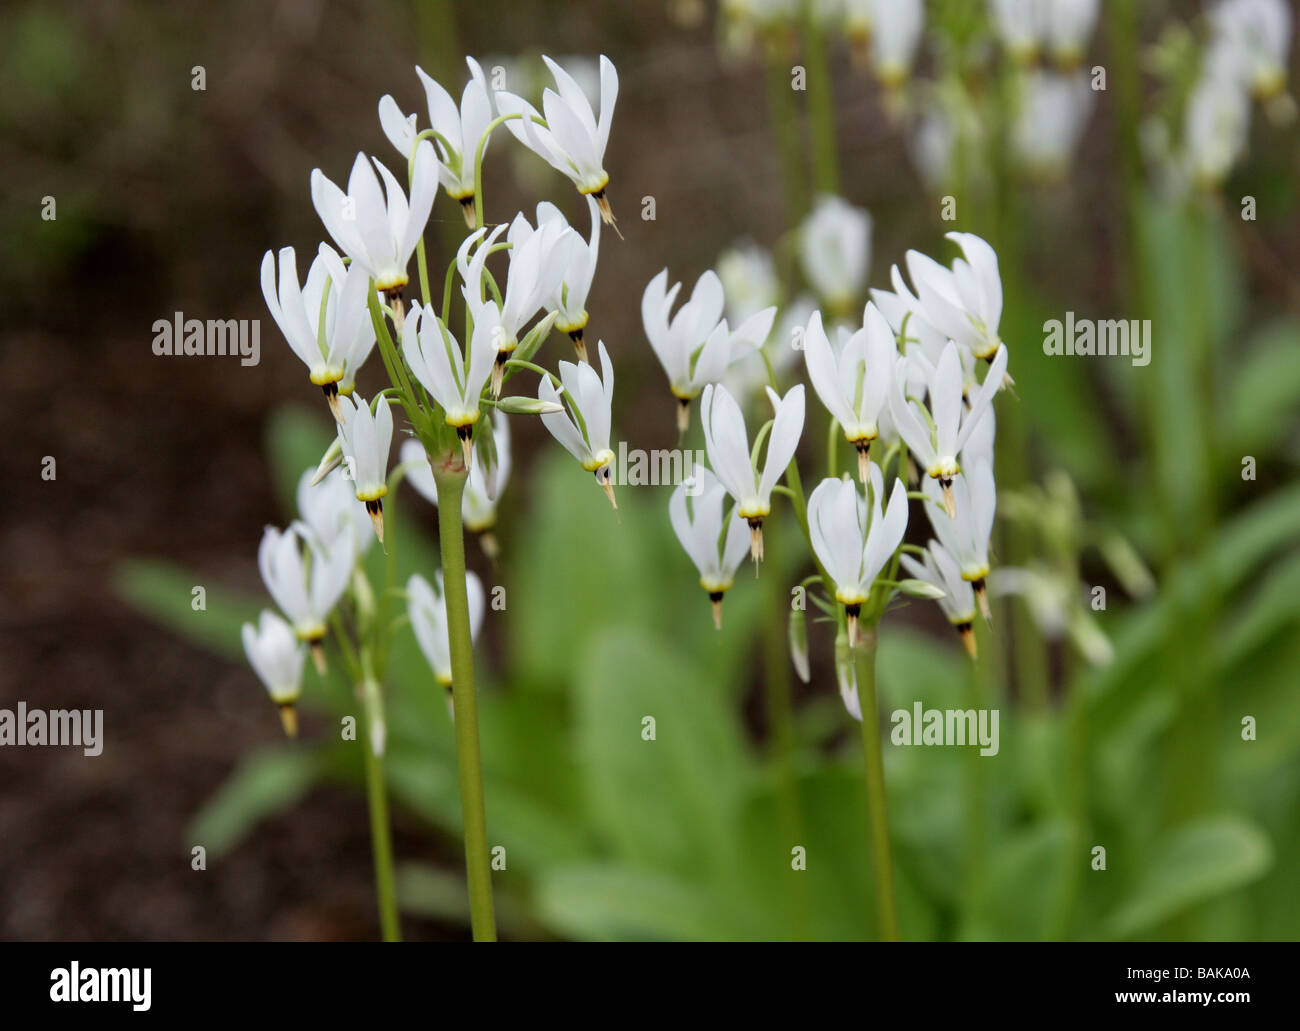 Shooting Star o orgoglio di Ohio, Dodecatheon meadia, Primulaceae, Nord America, STATI UNITI D'AMERICA Foto Stock